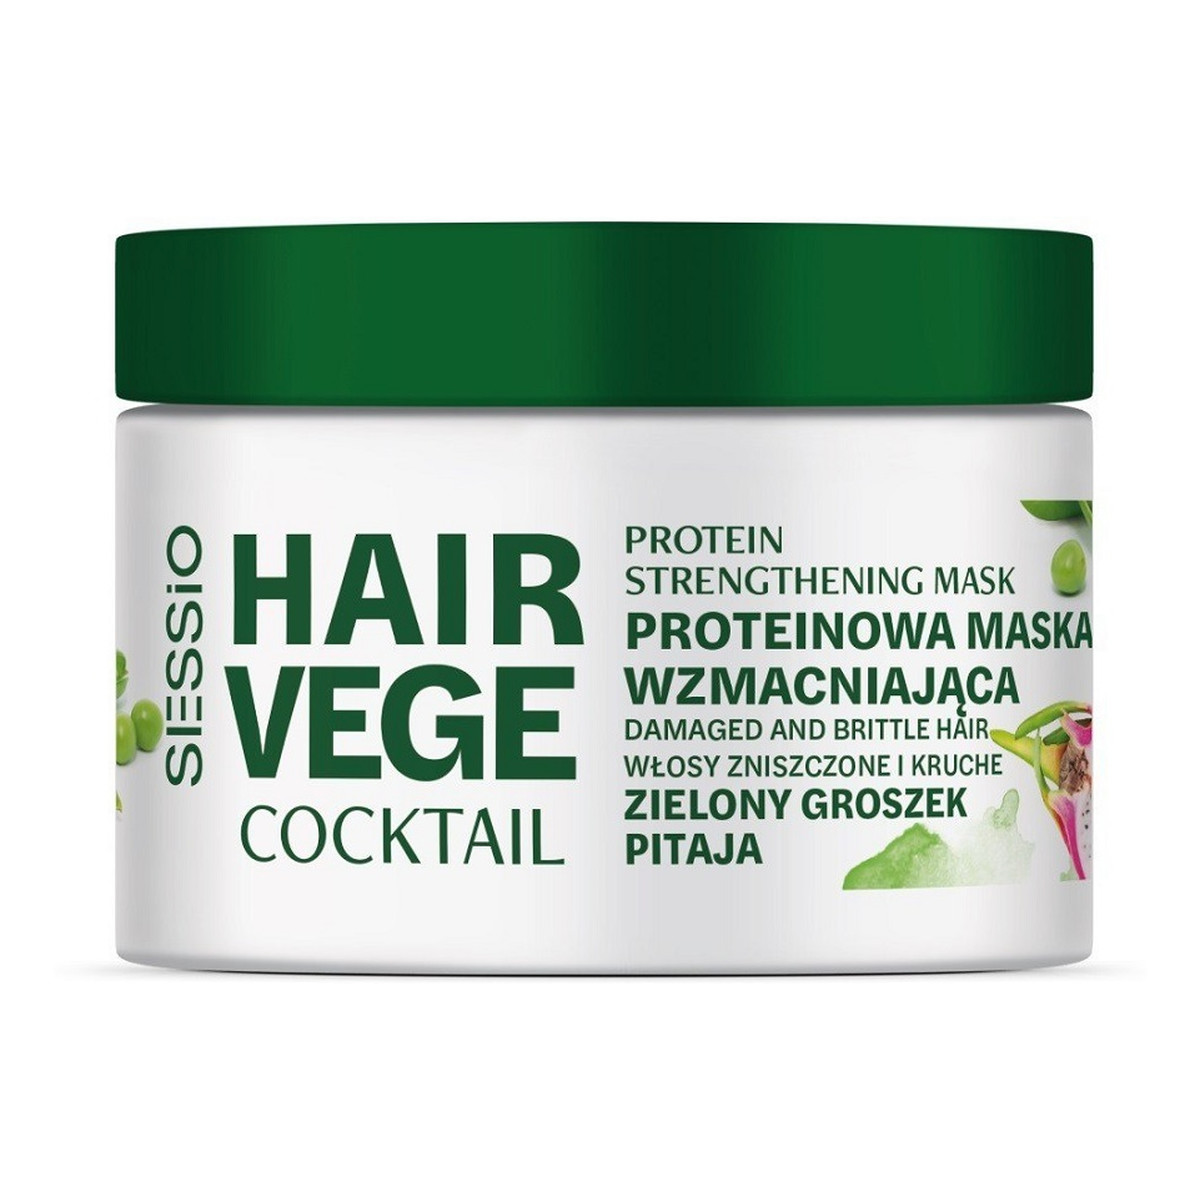 Sessio Hair vege cocktail proteinowa maska wzmacniająca zielony groszek i pitaja 250g 250g